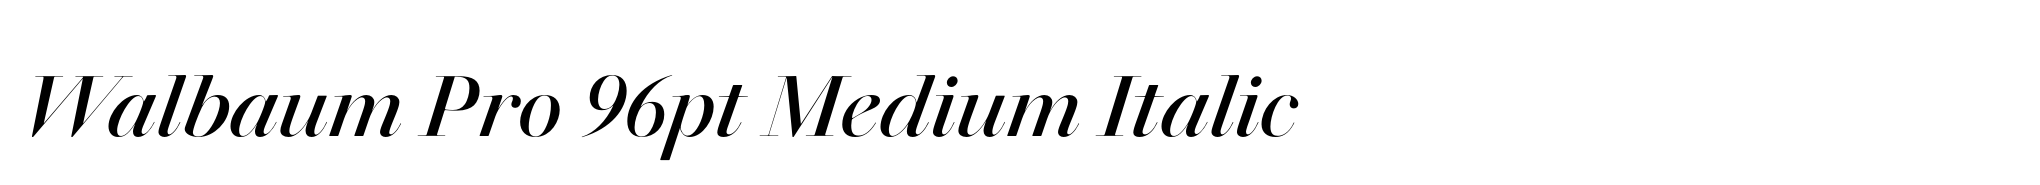 Walbaum Pro 96pt Medium Italic image